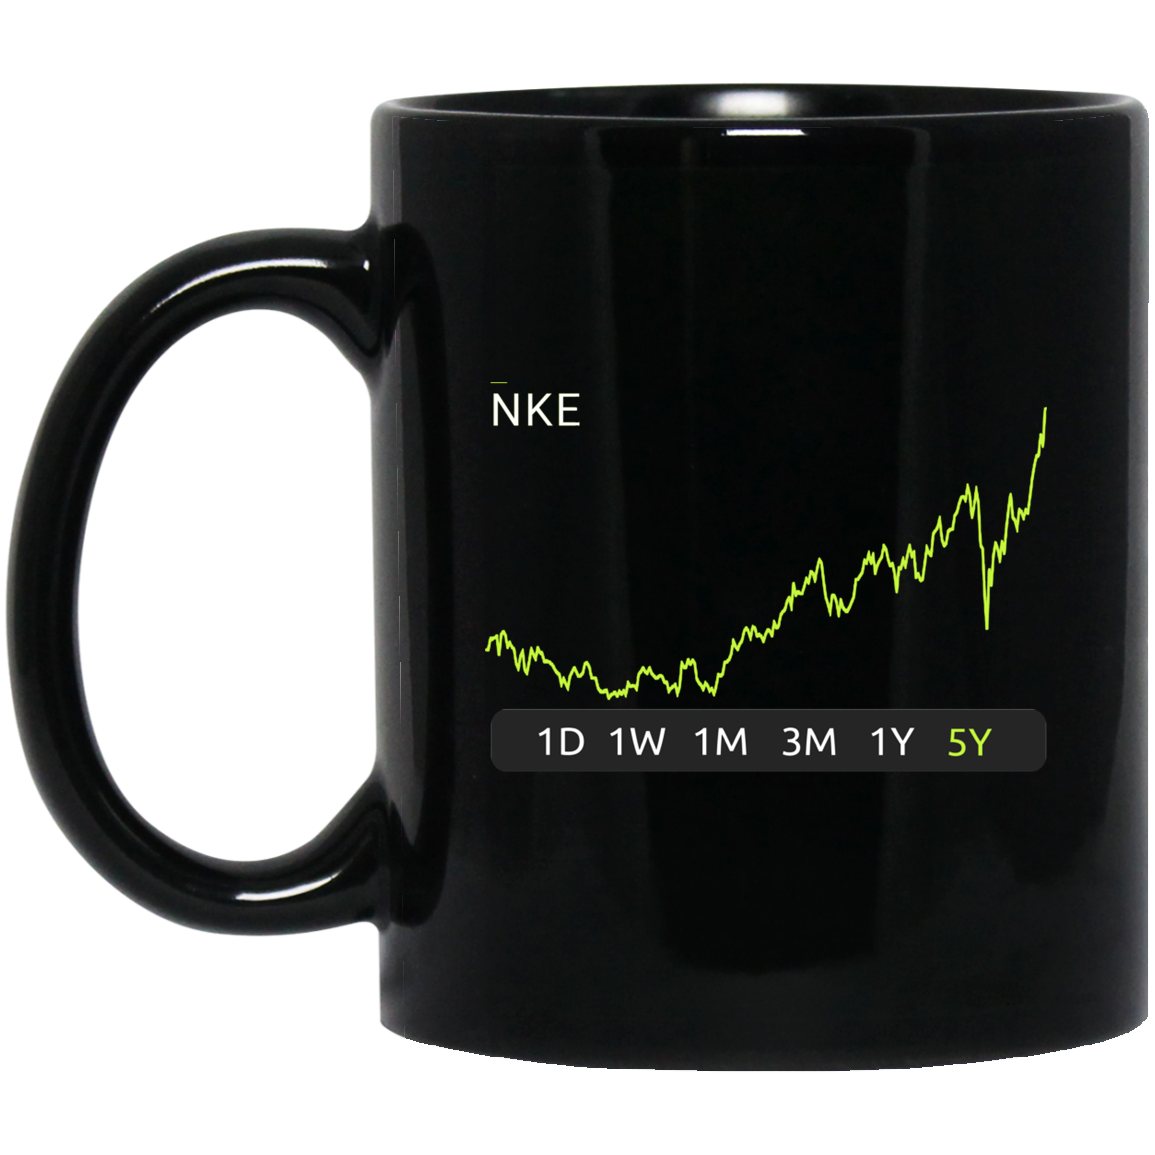 NKE 5y Stock Mug